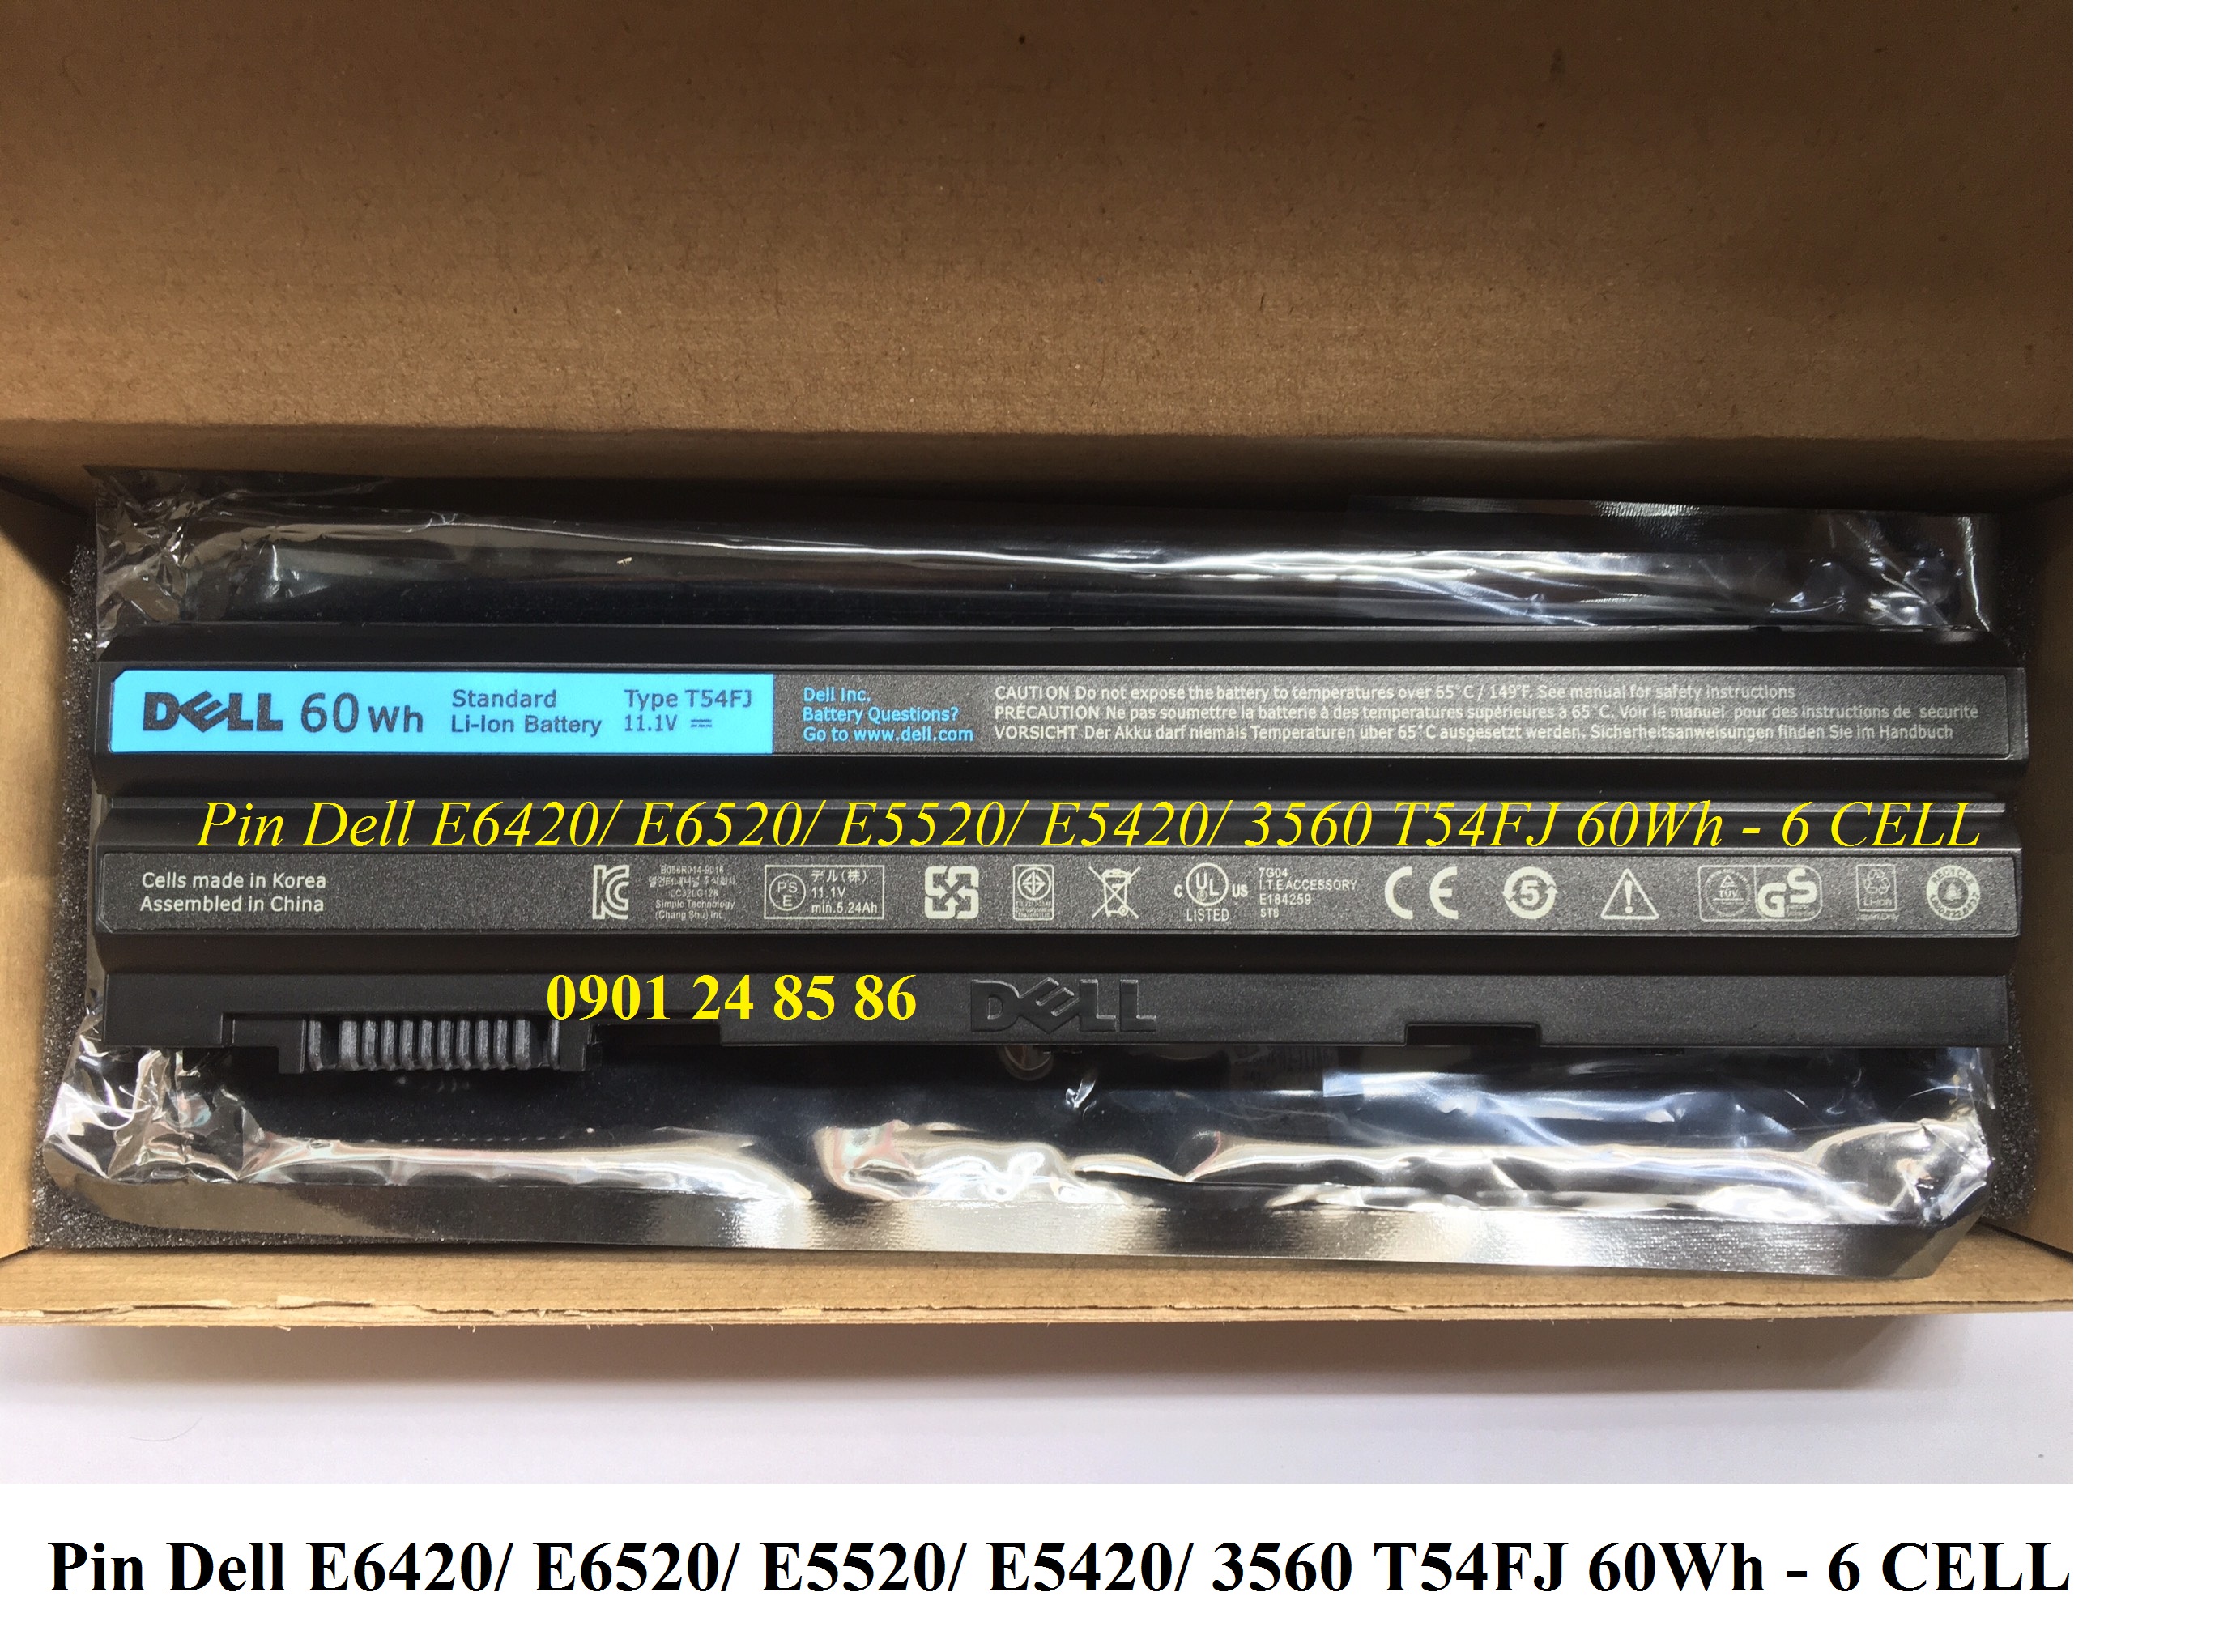 Batterie pour Asus Chromebook C200M 4200mAh 11.4V